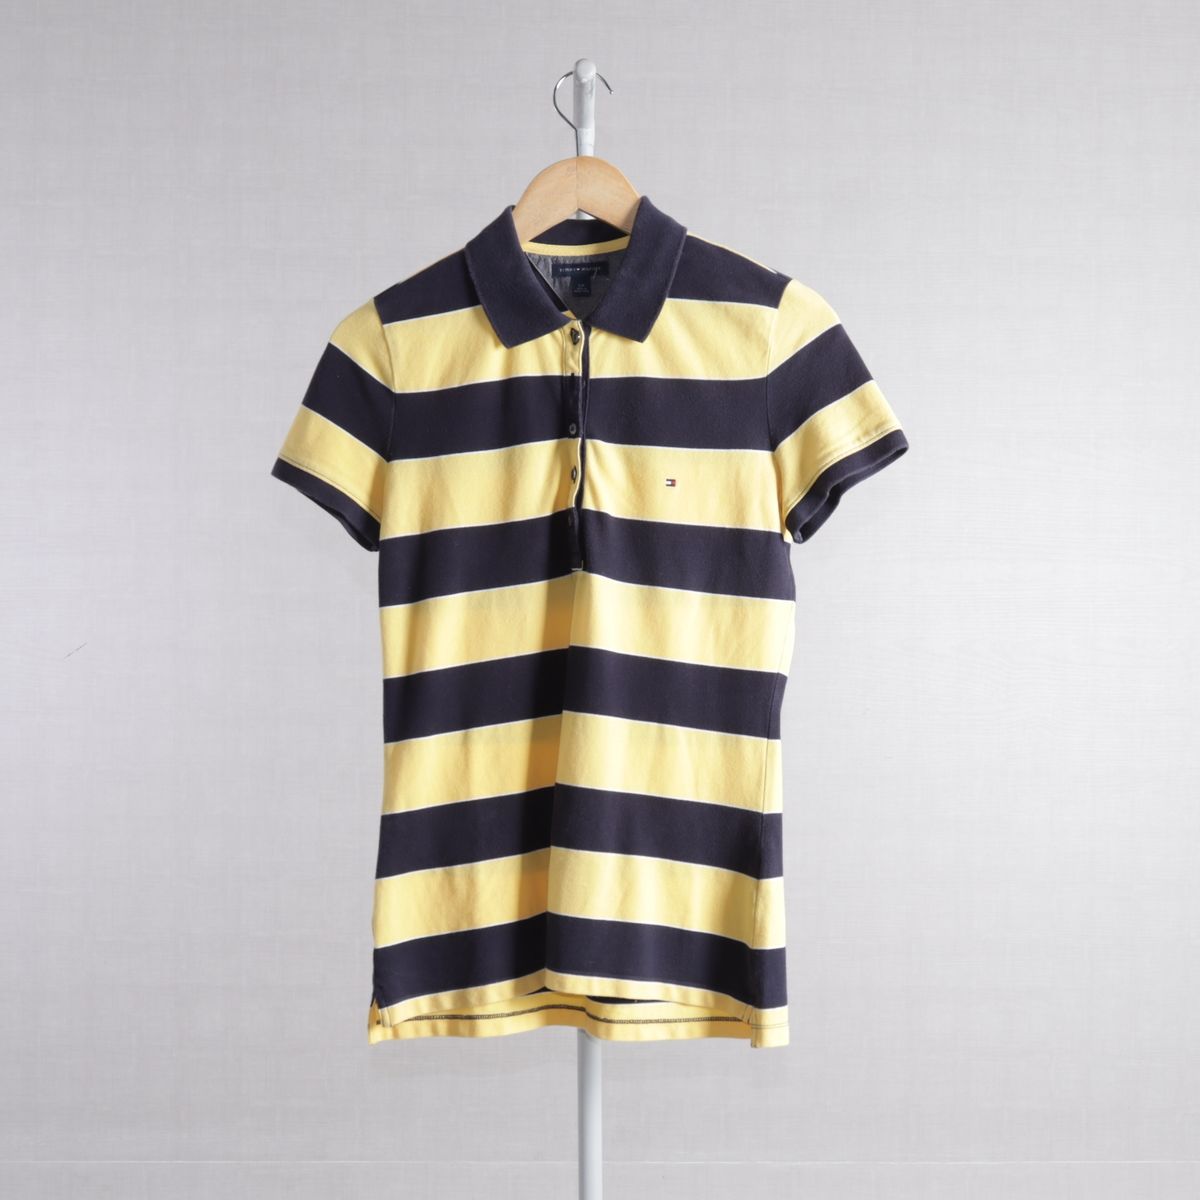 Camiseta Tommy Hilfiger Lettering Amarela - Compre Agora